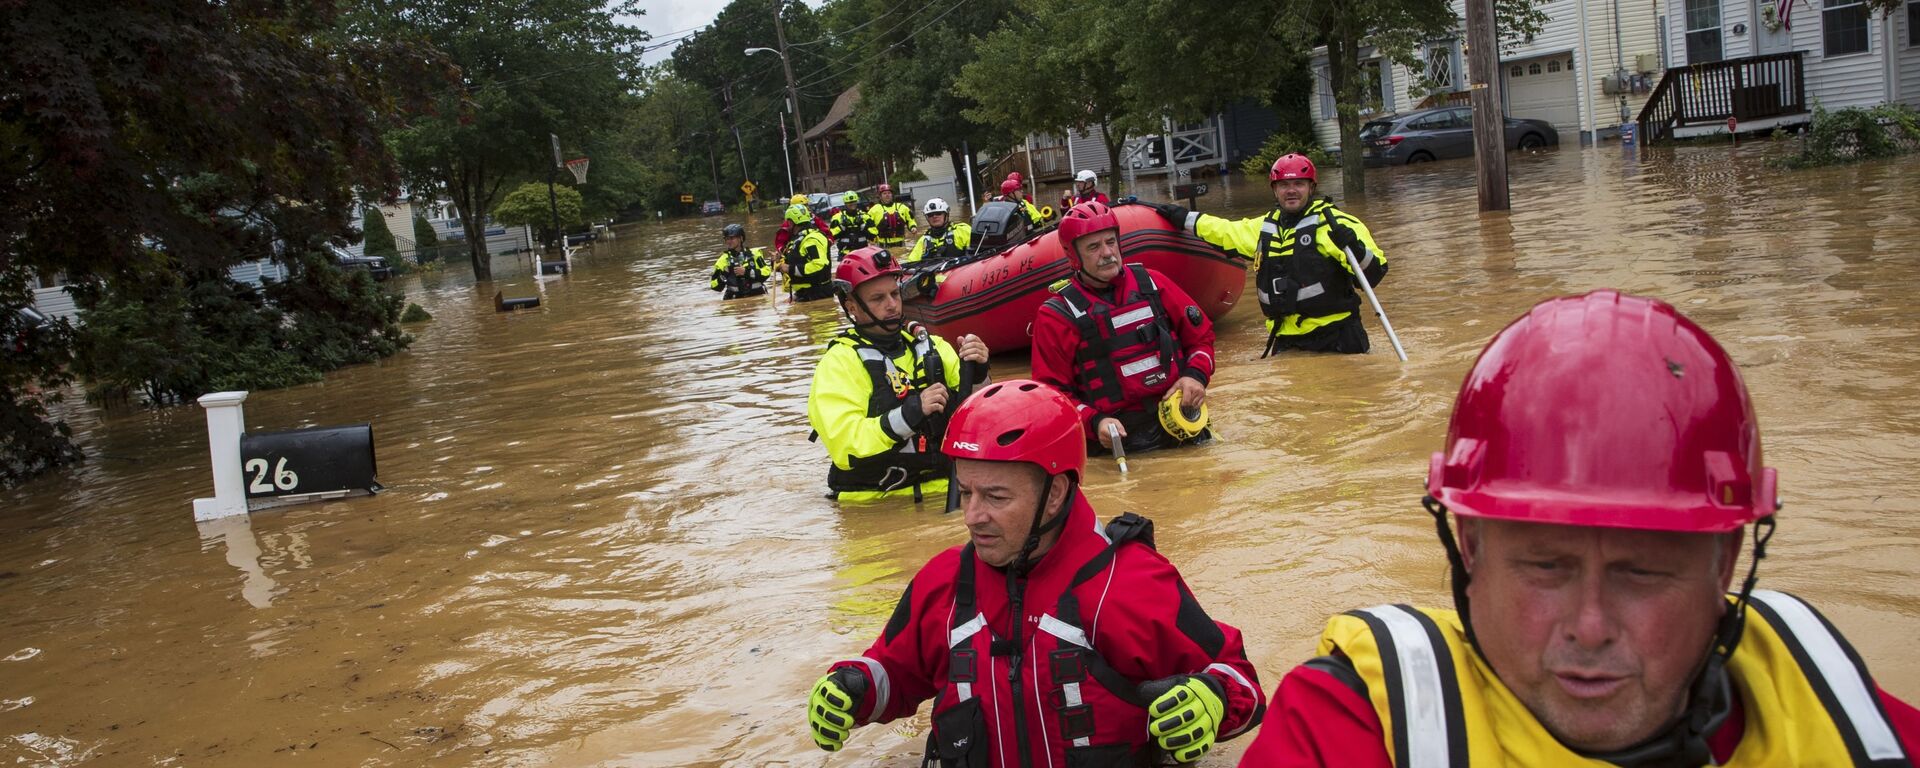 Члены добровольческой пожарной компании New Market ищут пострадавших от наводнения, вызванного тропическим штормом Генри - Sputnik Молдова, 1920, 23.08.2021